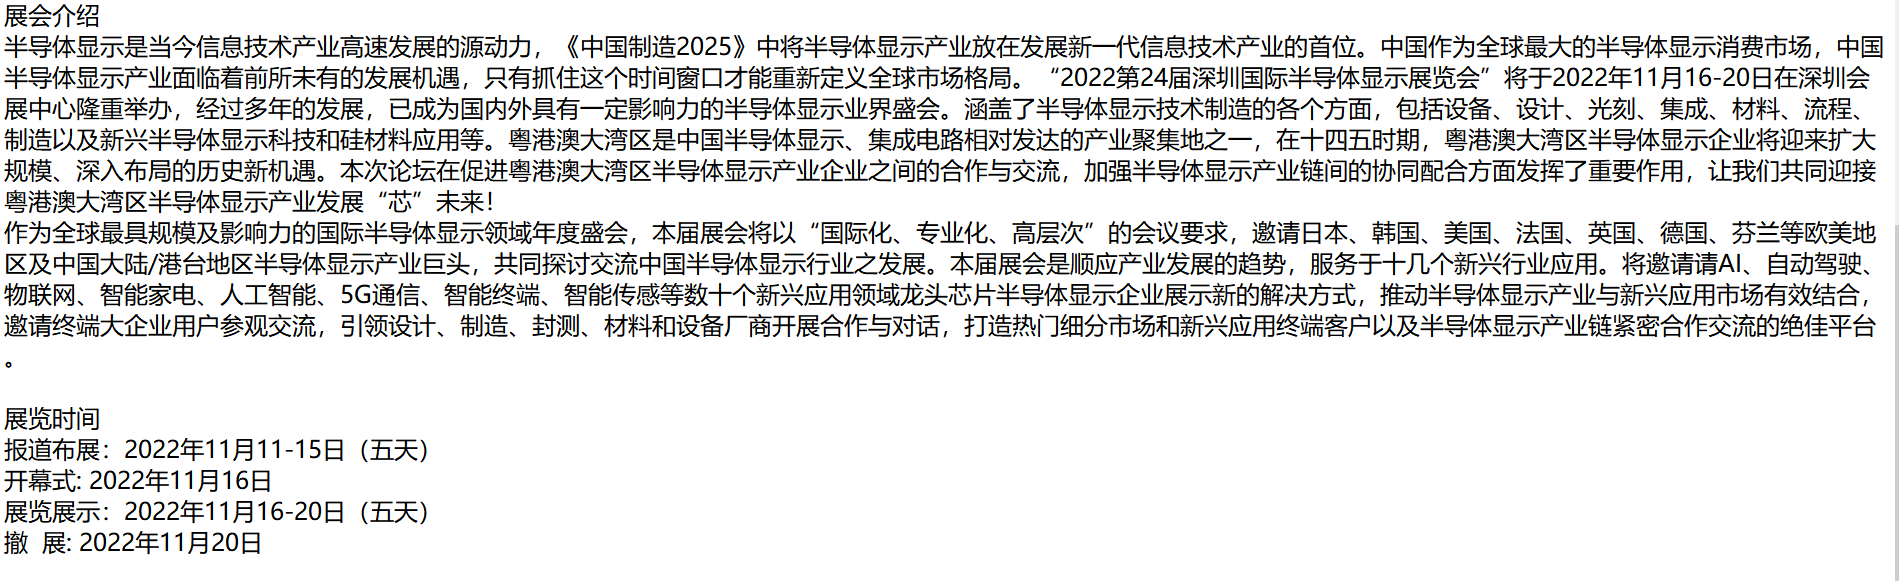 首页_2022第24届深圳半导体显示展